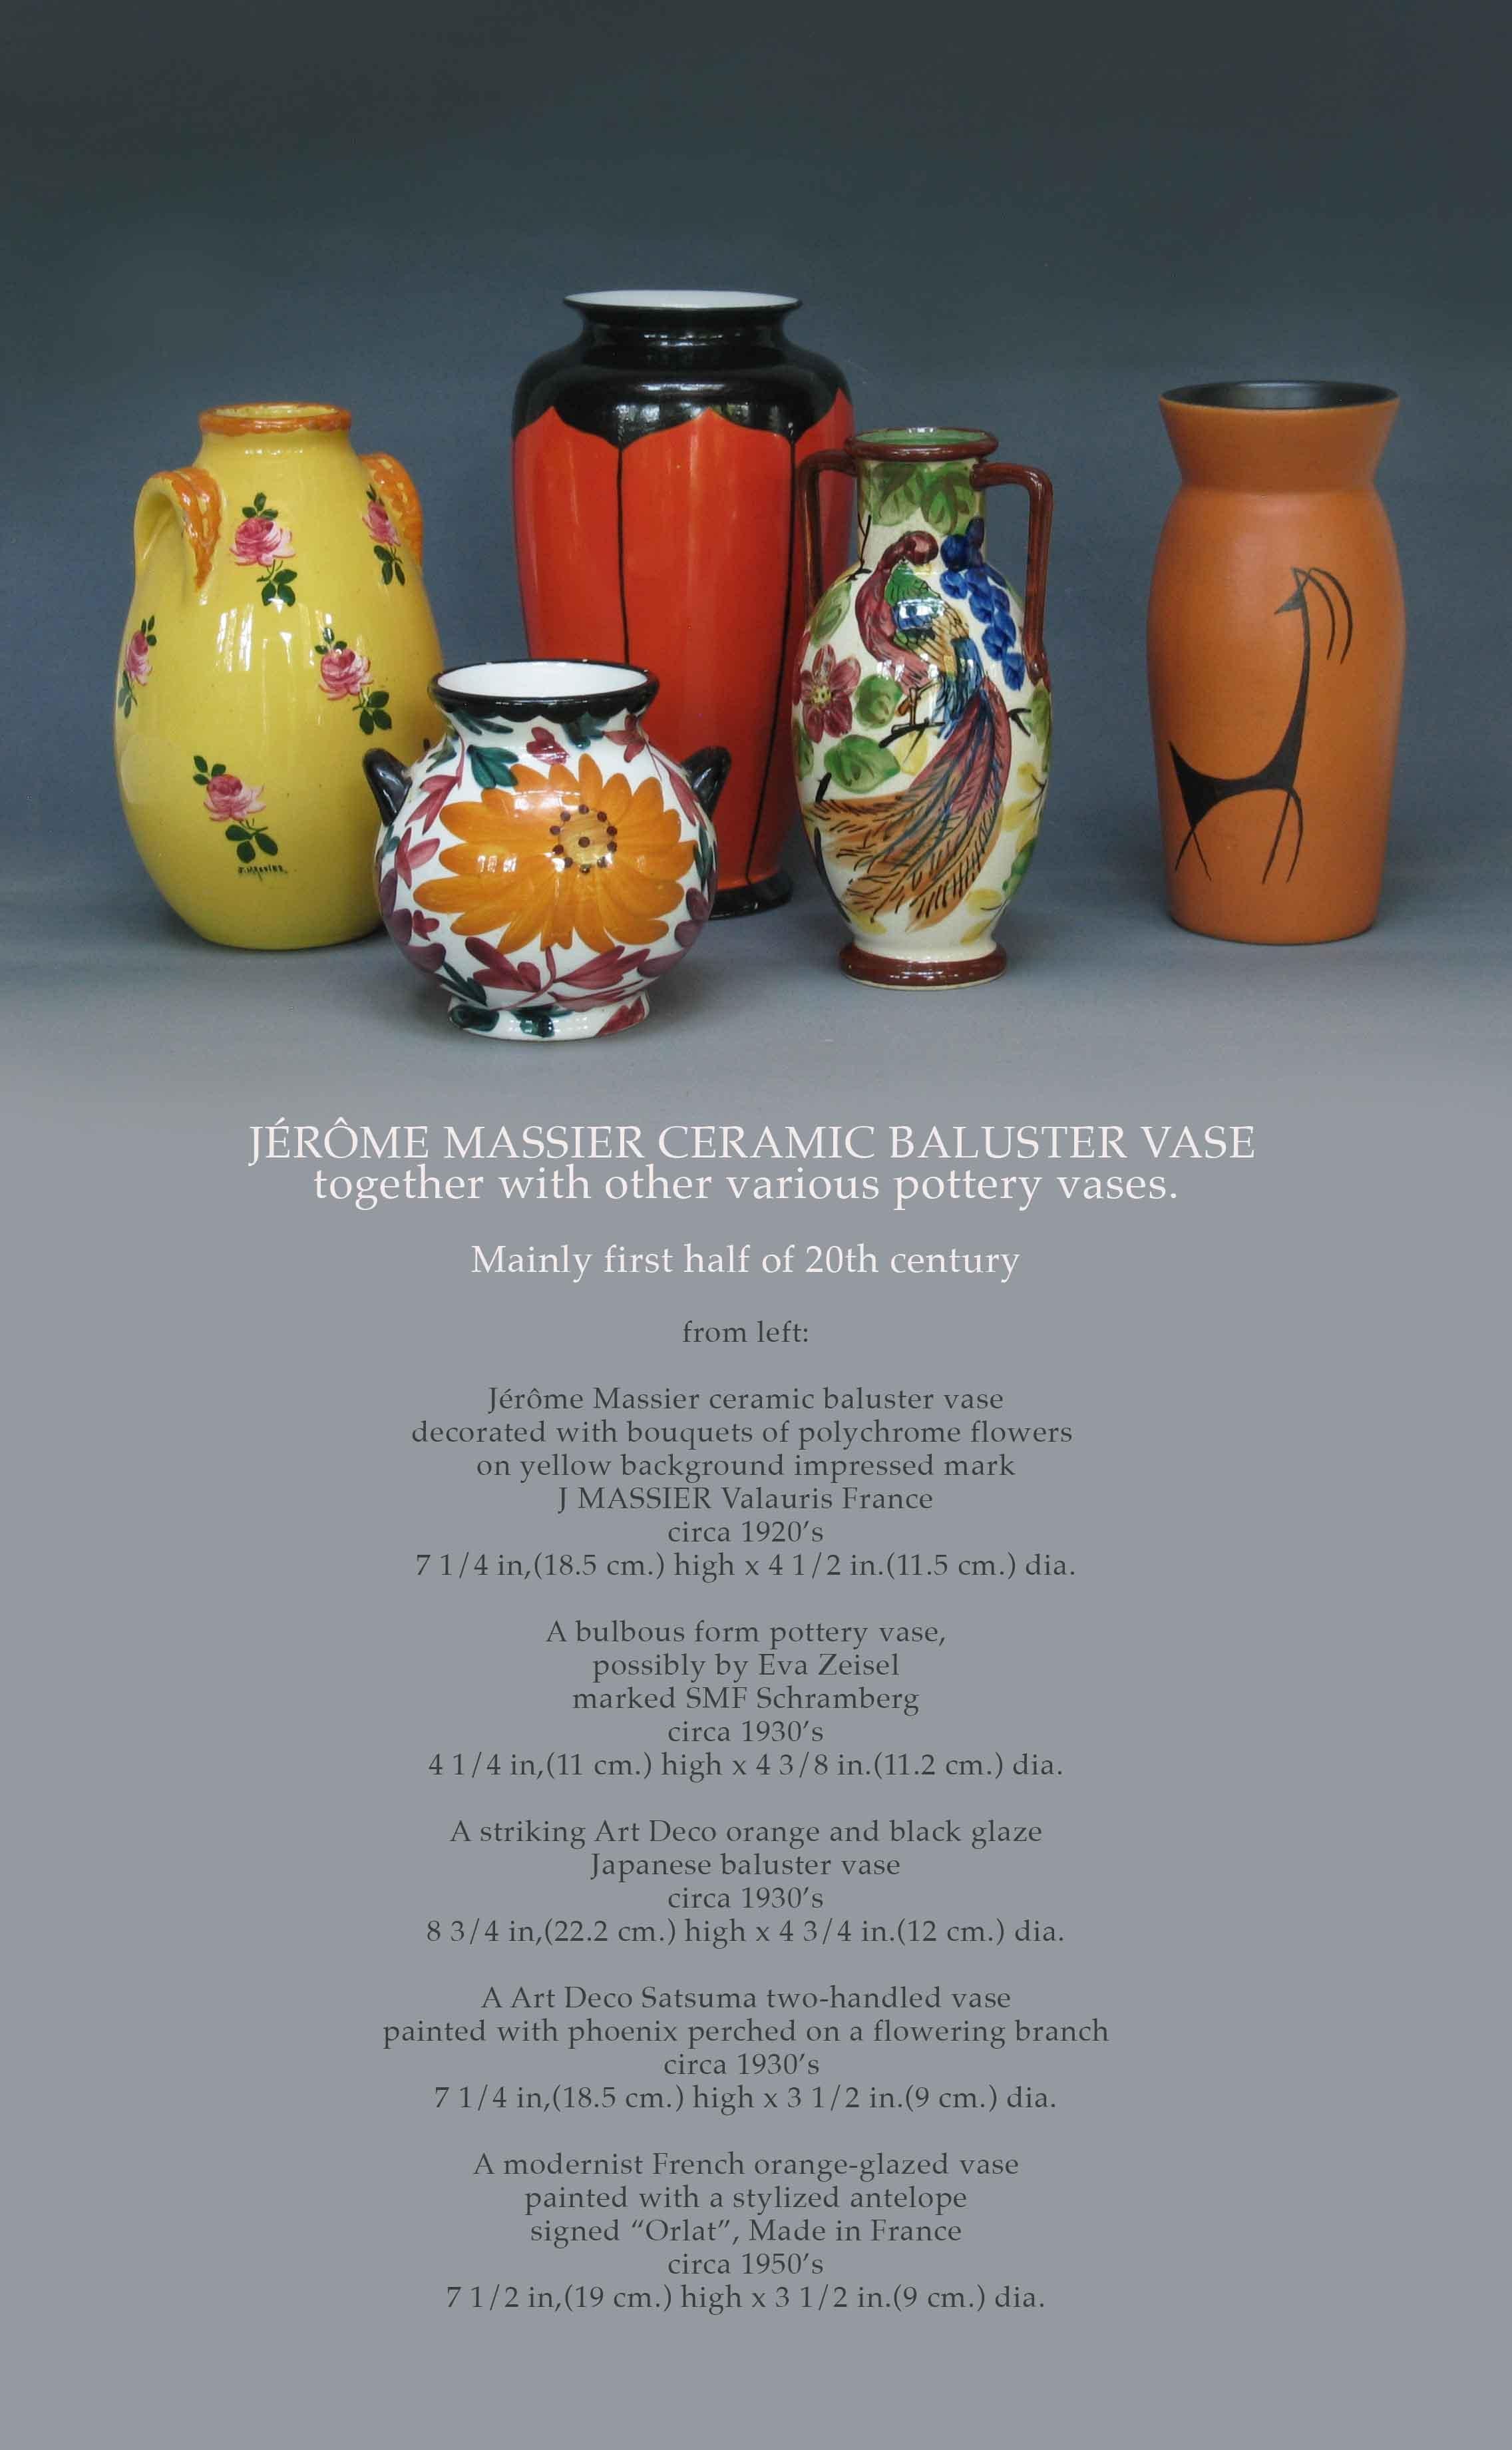 Vase balustre en céramique Jérôme Massier
ainsi que d'autres vases en poterie.

Principalement première moitié du 20e siècle.

De gauche à droite :

Vase balustre en céramique Jérôme Massier
décorée de bouquets de fleurs polychromes
sur fond jaune